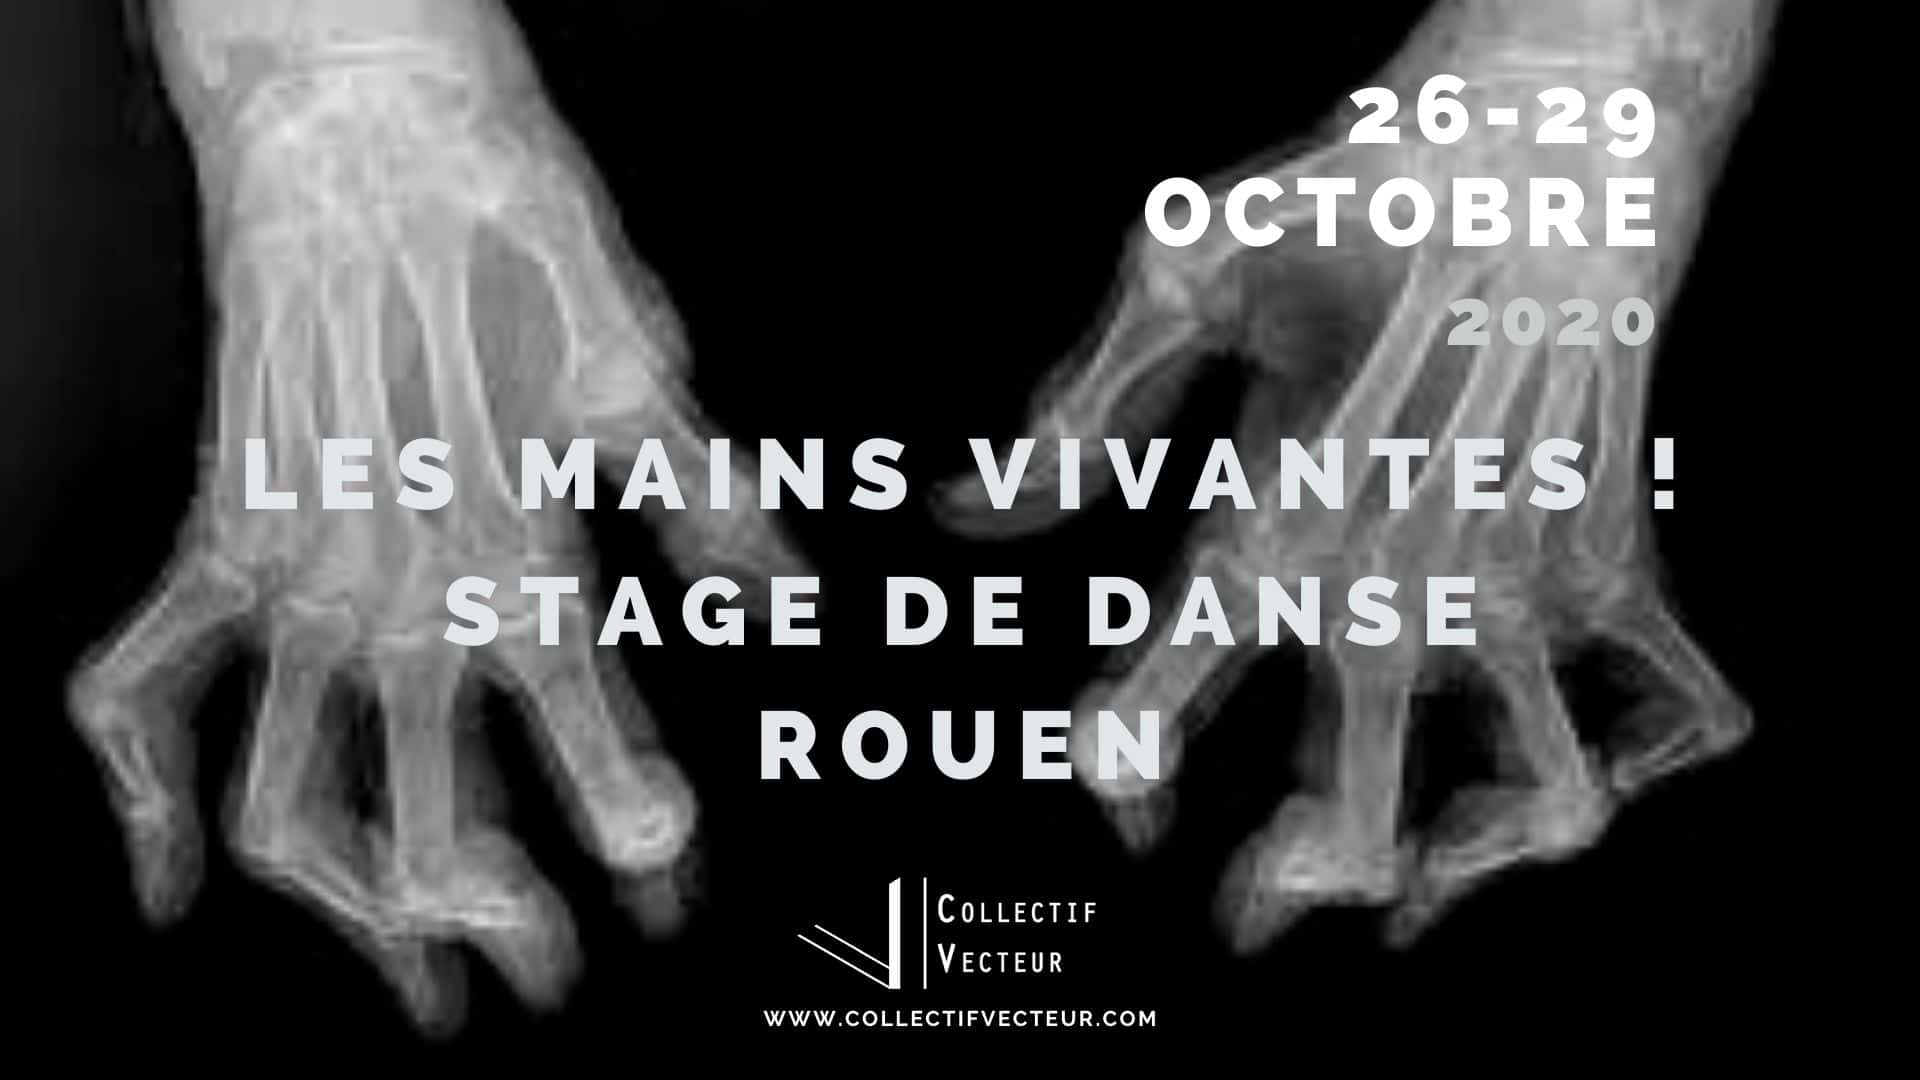 les mains vivantes remous collectif vecteur danse Rouen atelier stage